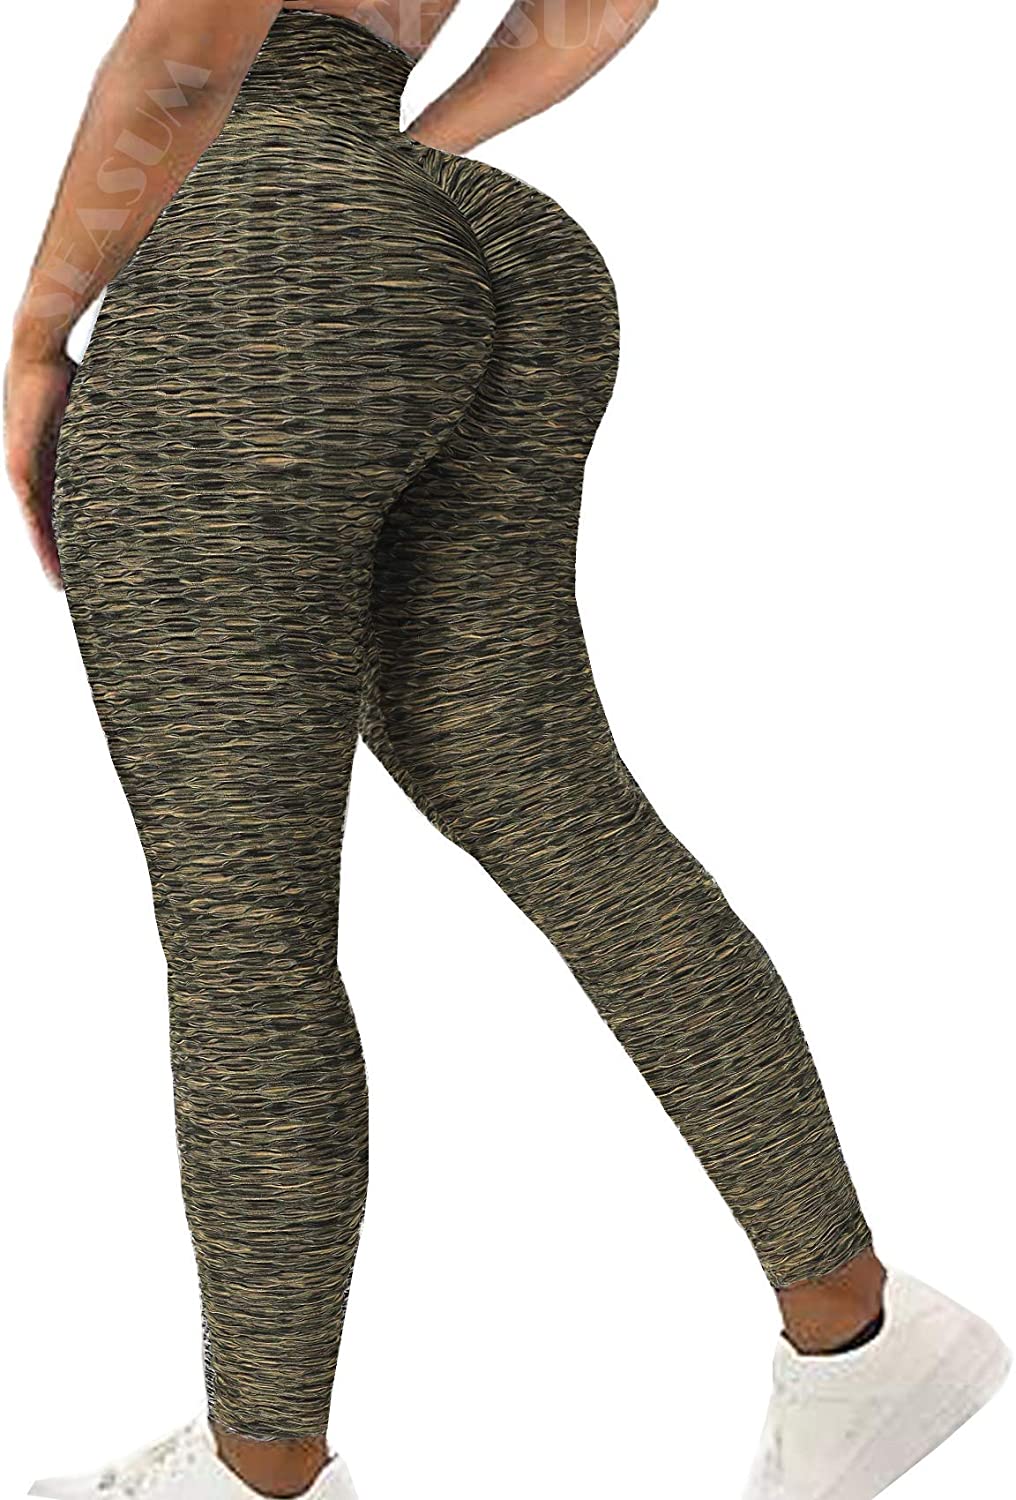 Scrunch de cintura alta com as mulheres legging fitness fitness bunda  levantamento de grade seamless estiramento leggins montante empurrar  calcinha